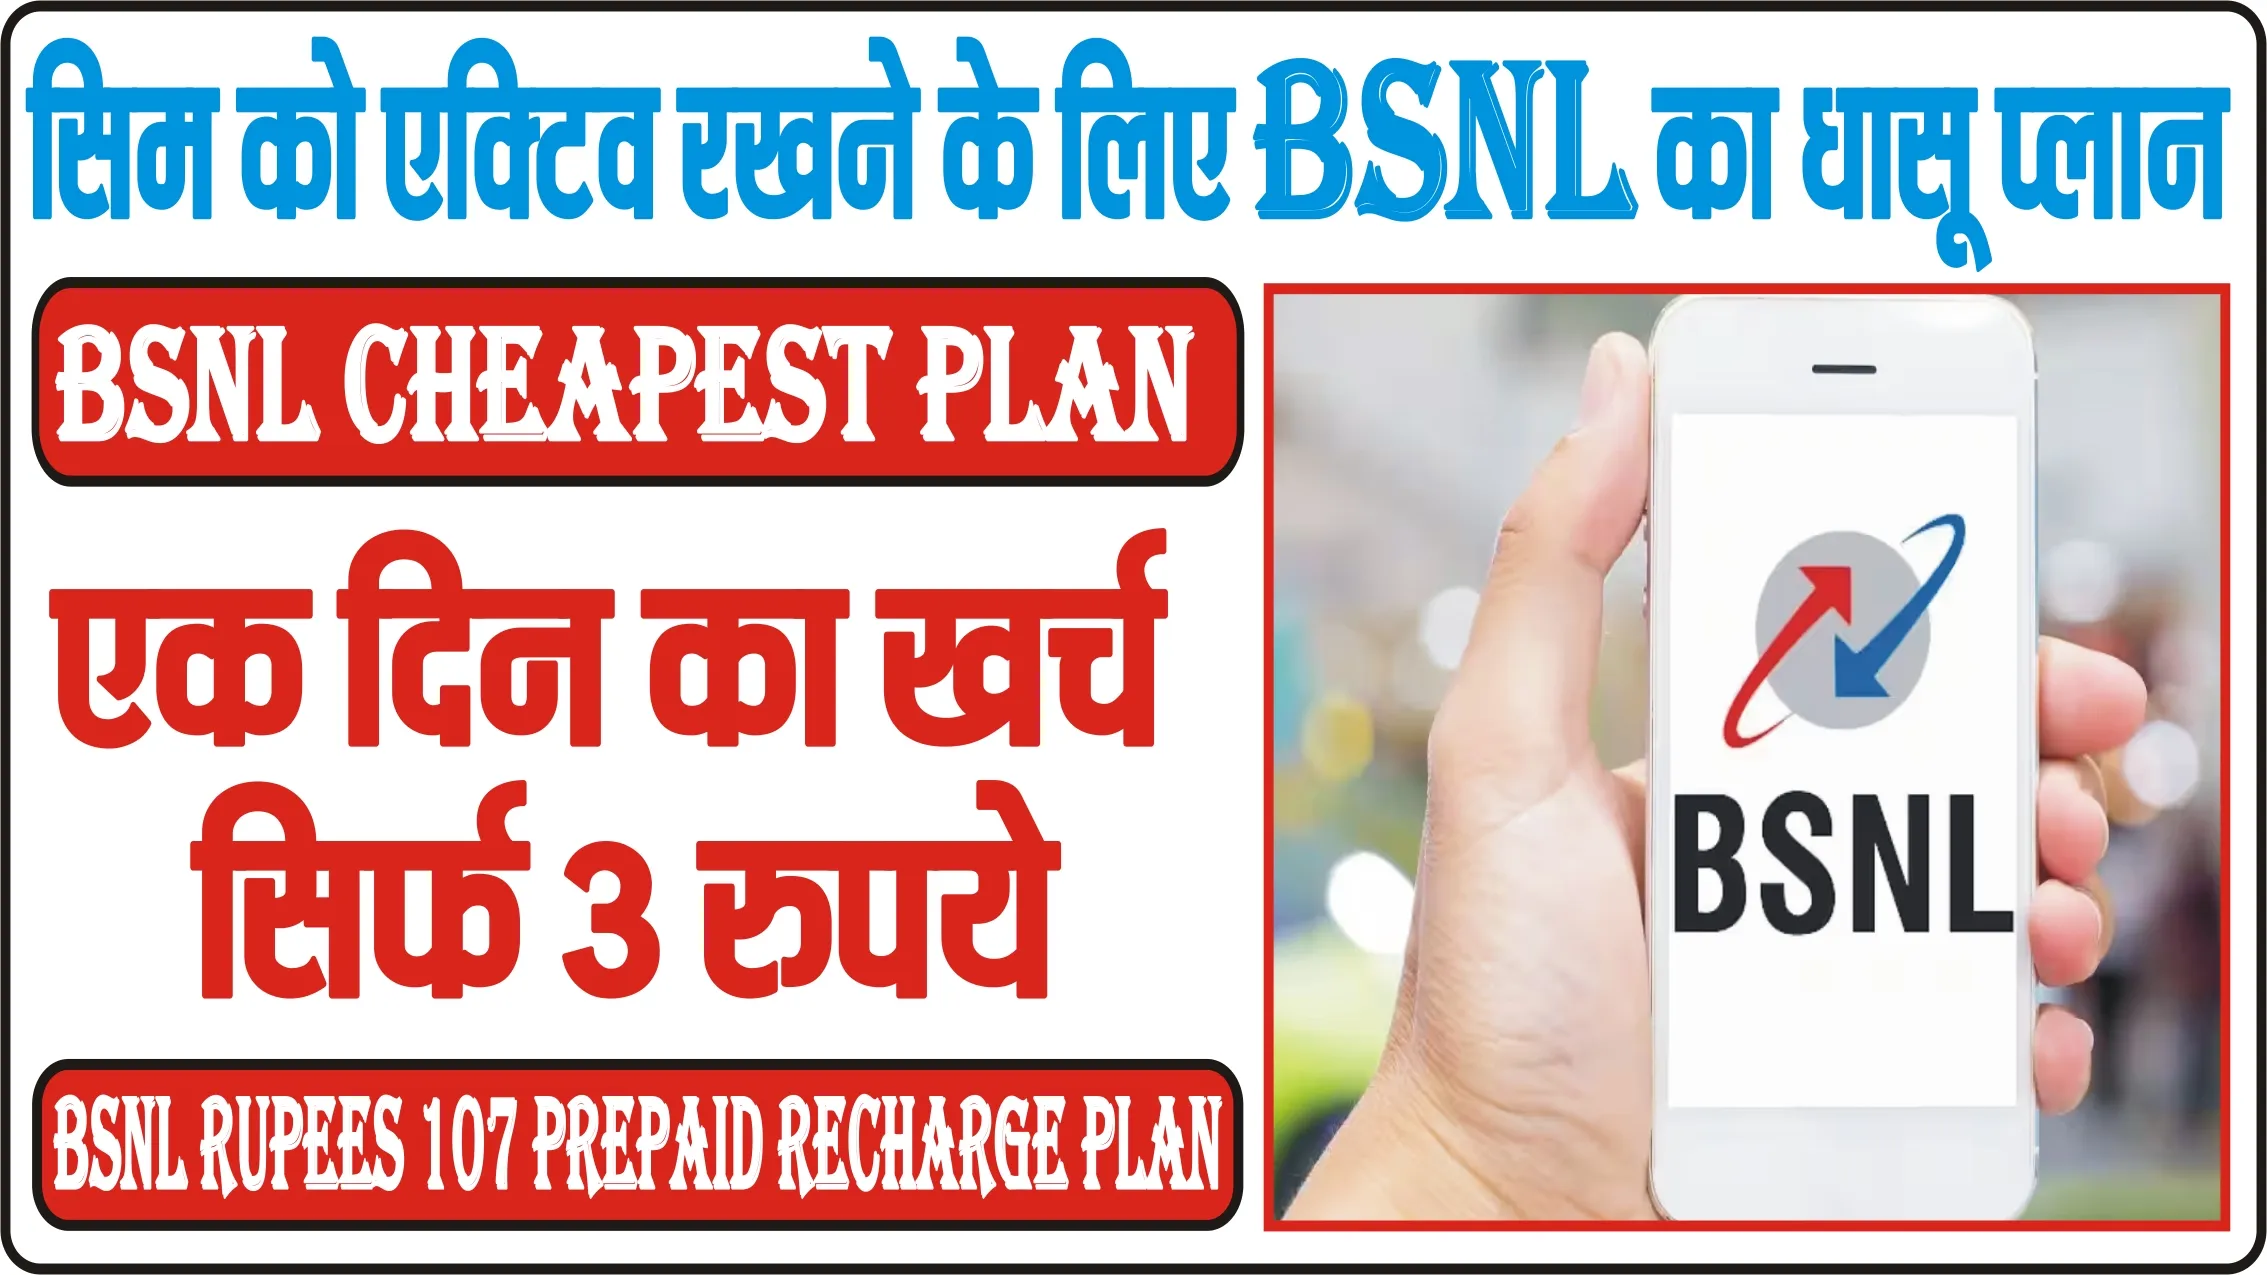 BSNL Cheapest Plan ||  सिम को एक्टिव रखने के लिए BSNL का धासू प्लान, एक दिन का खर्च सिर्फ 3 रुपये